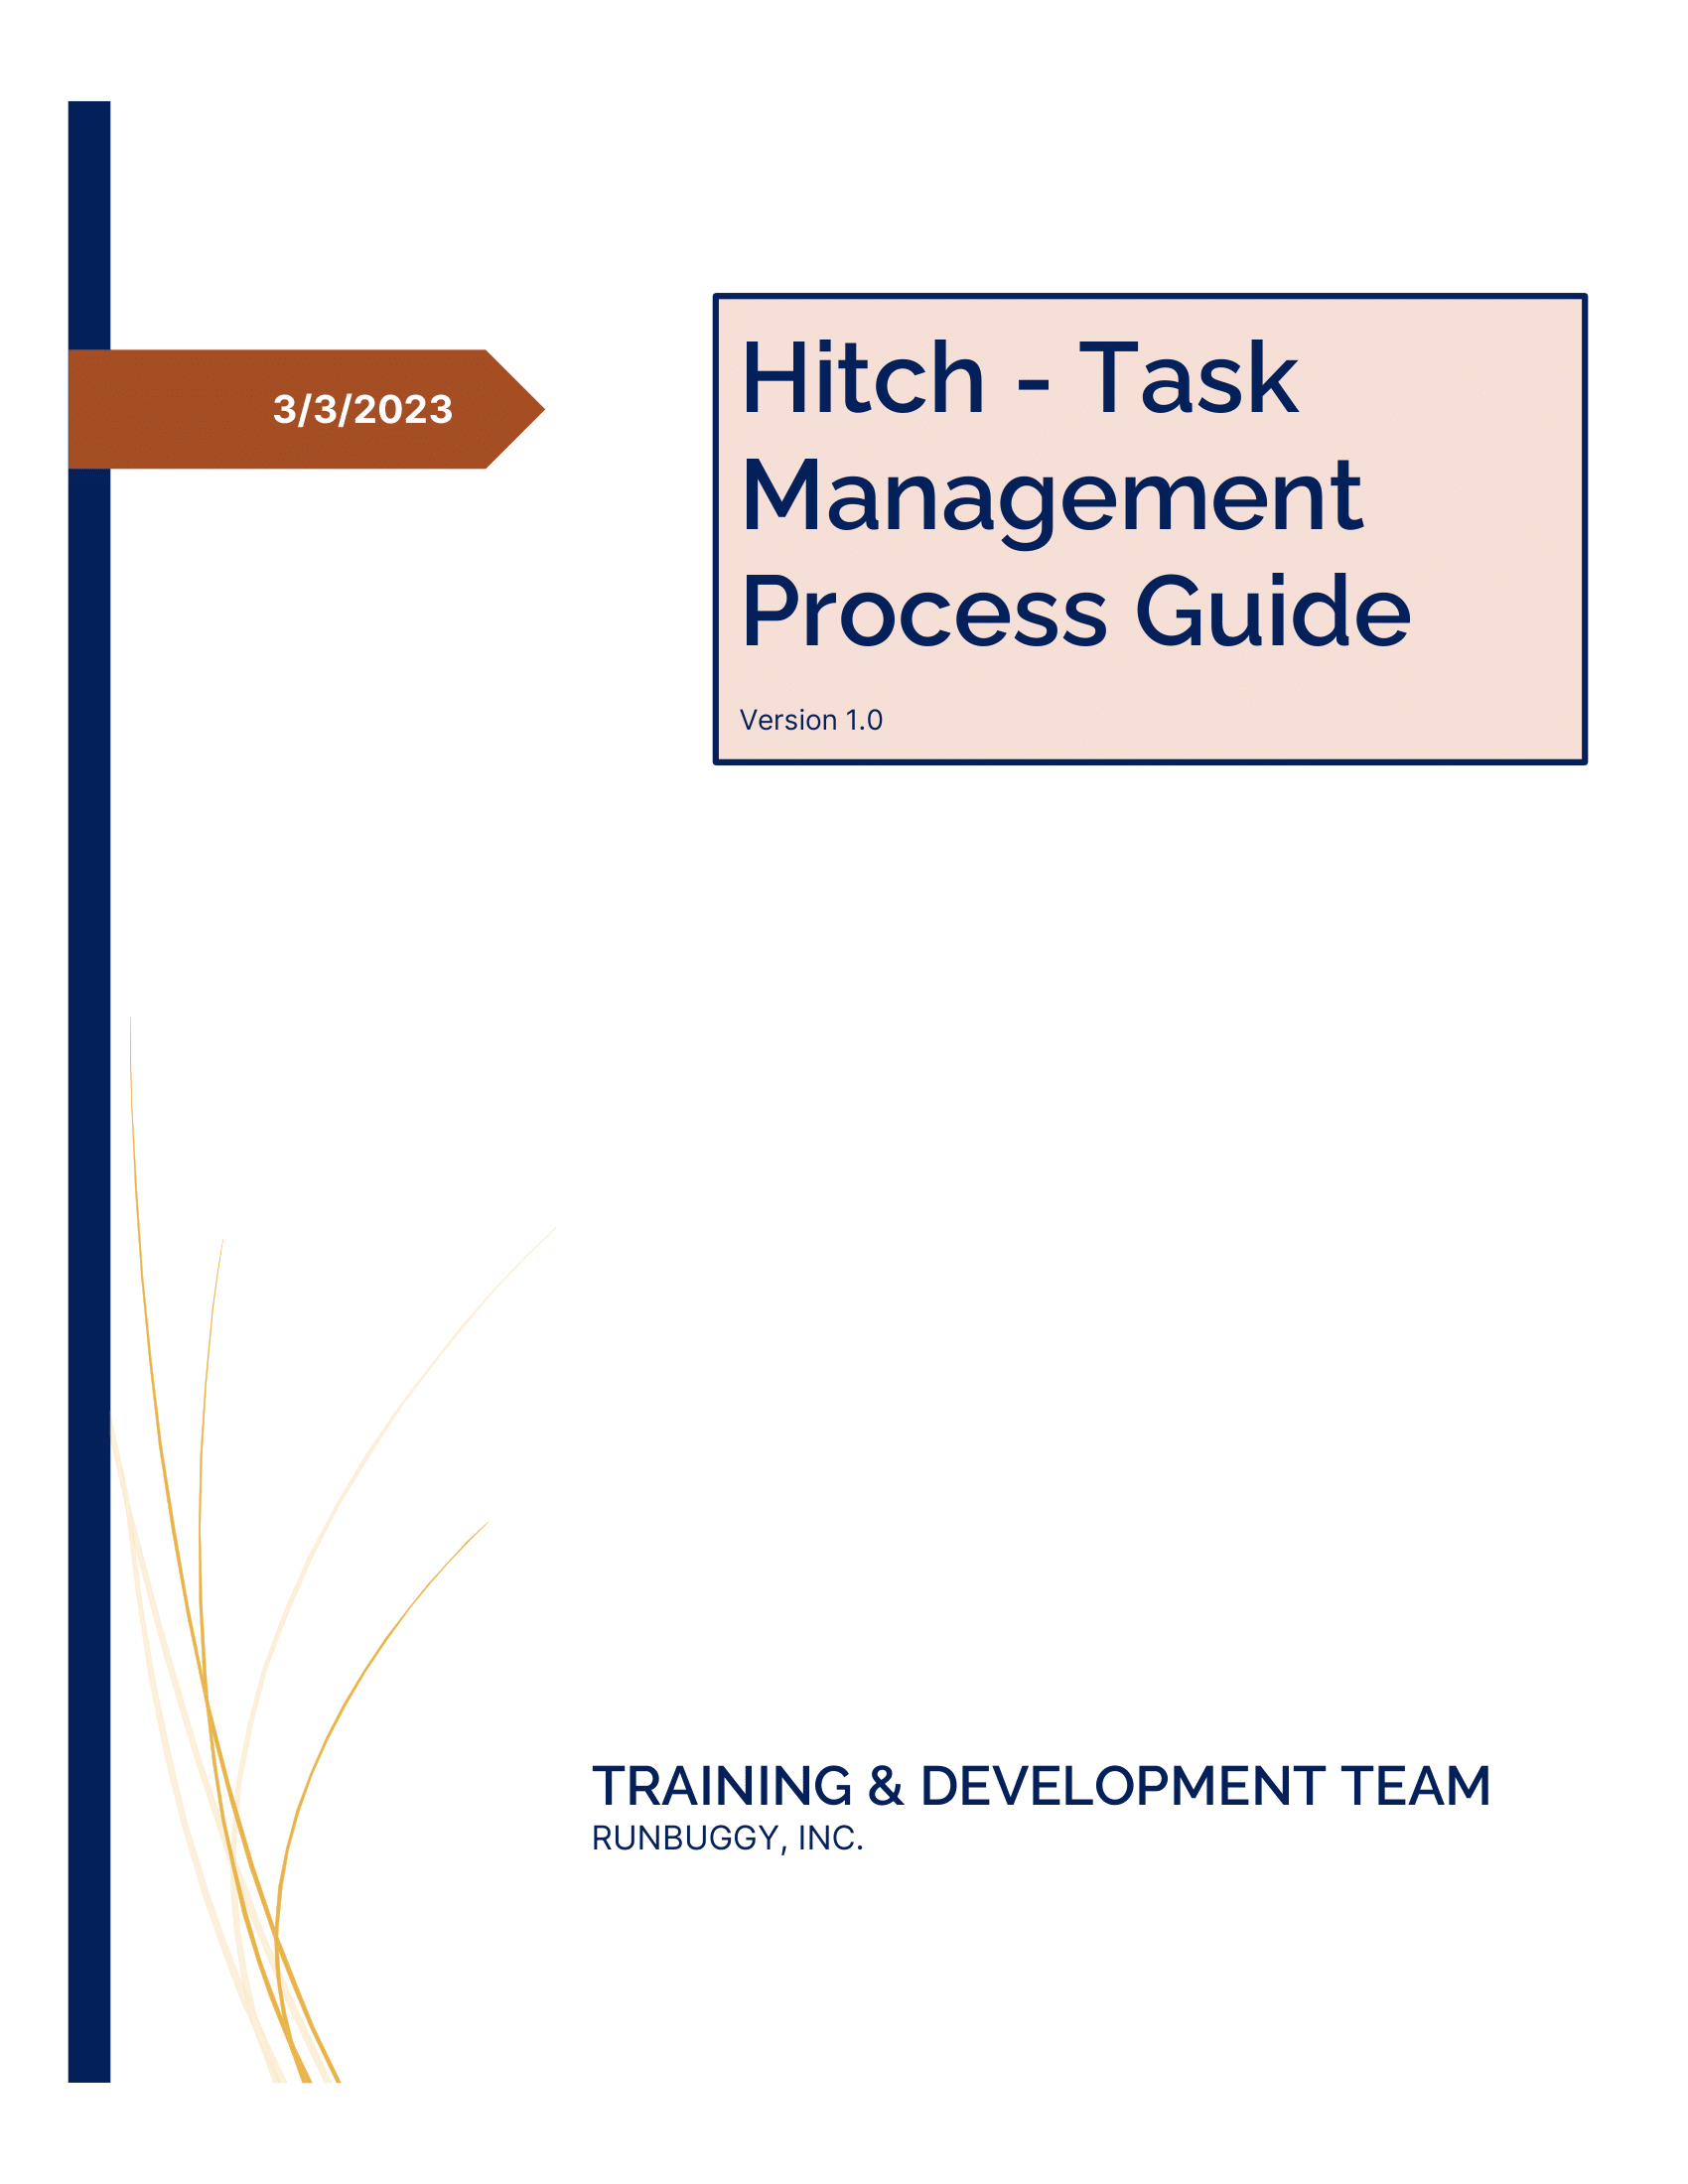 Hitch_TaskManagement_ProcessGuide_v1.0_03032023-01.png